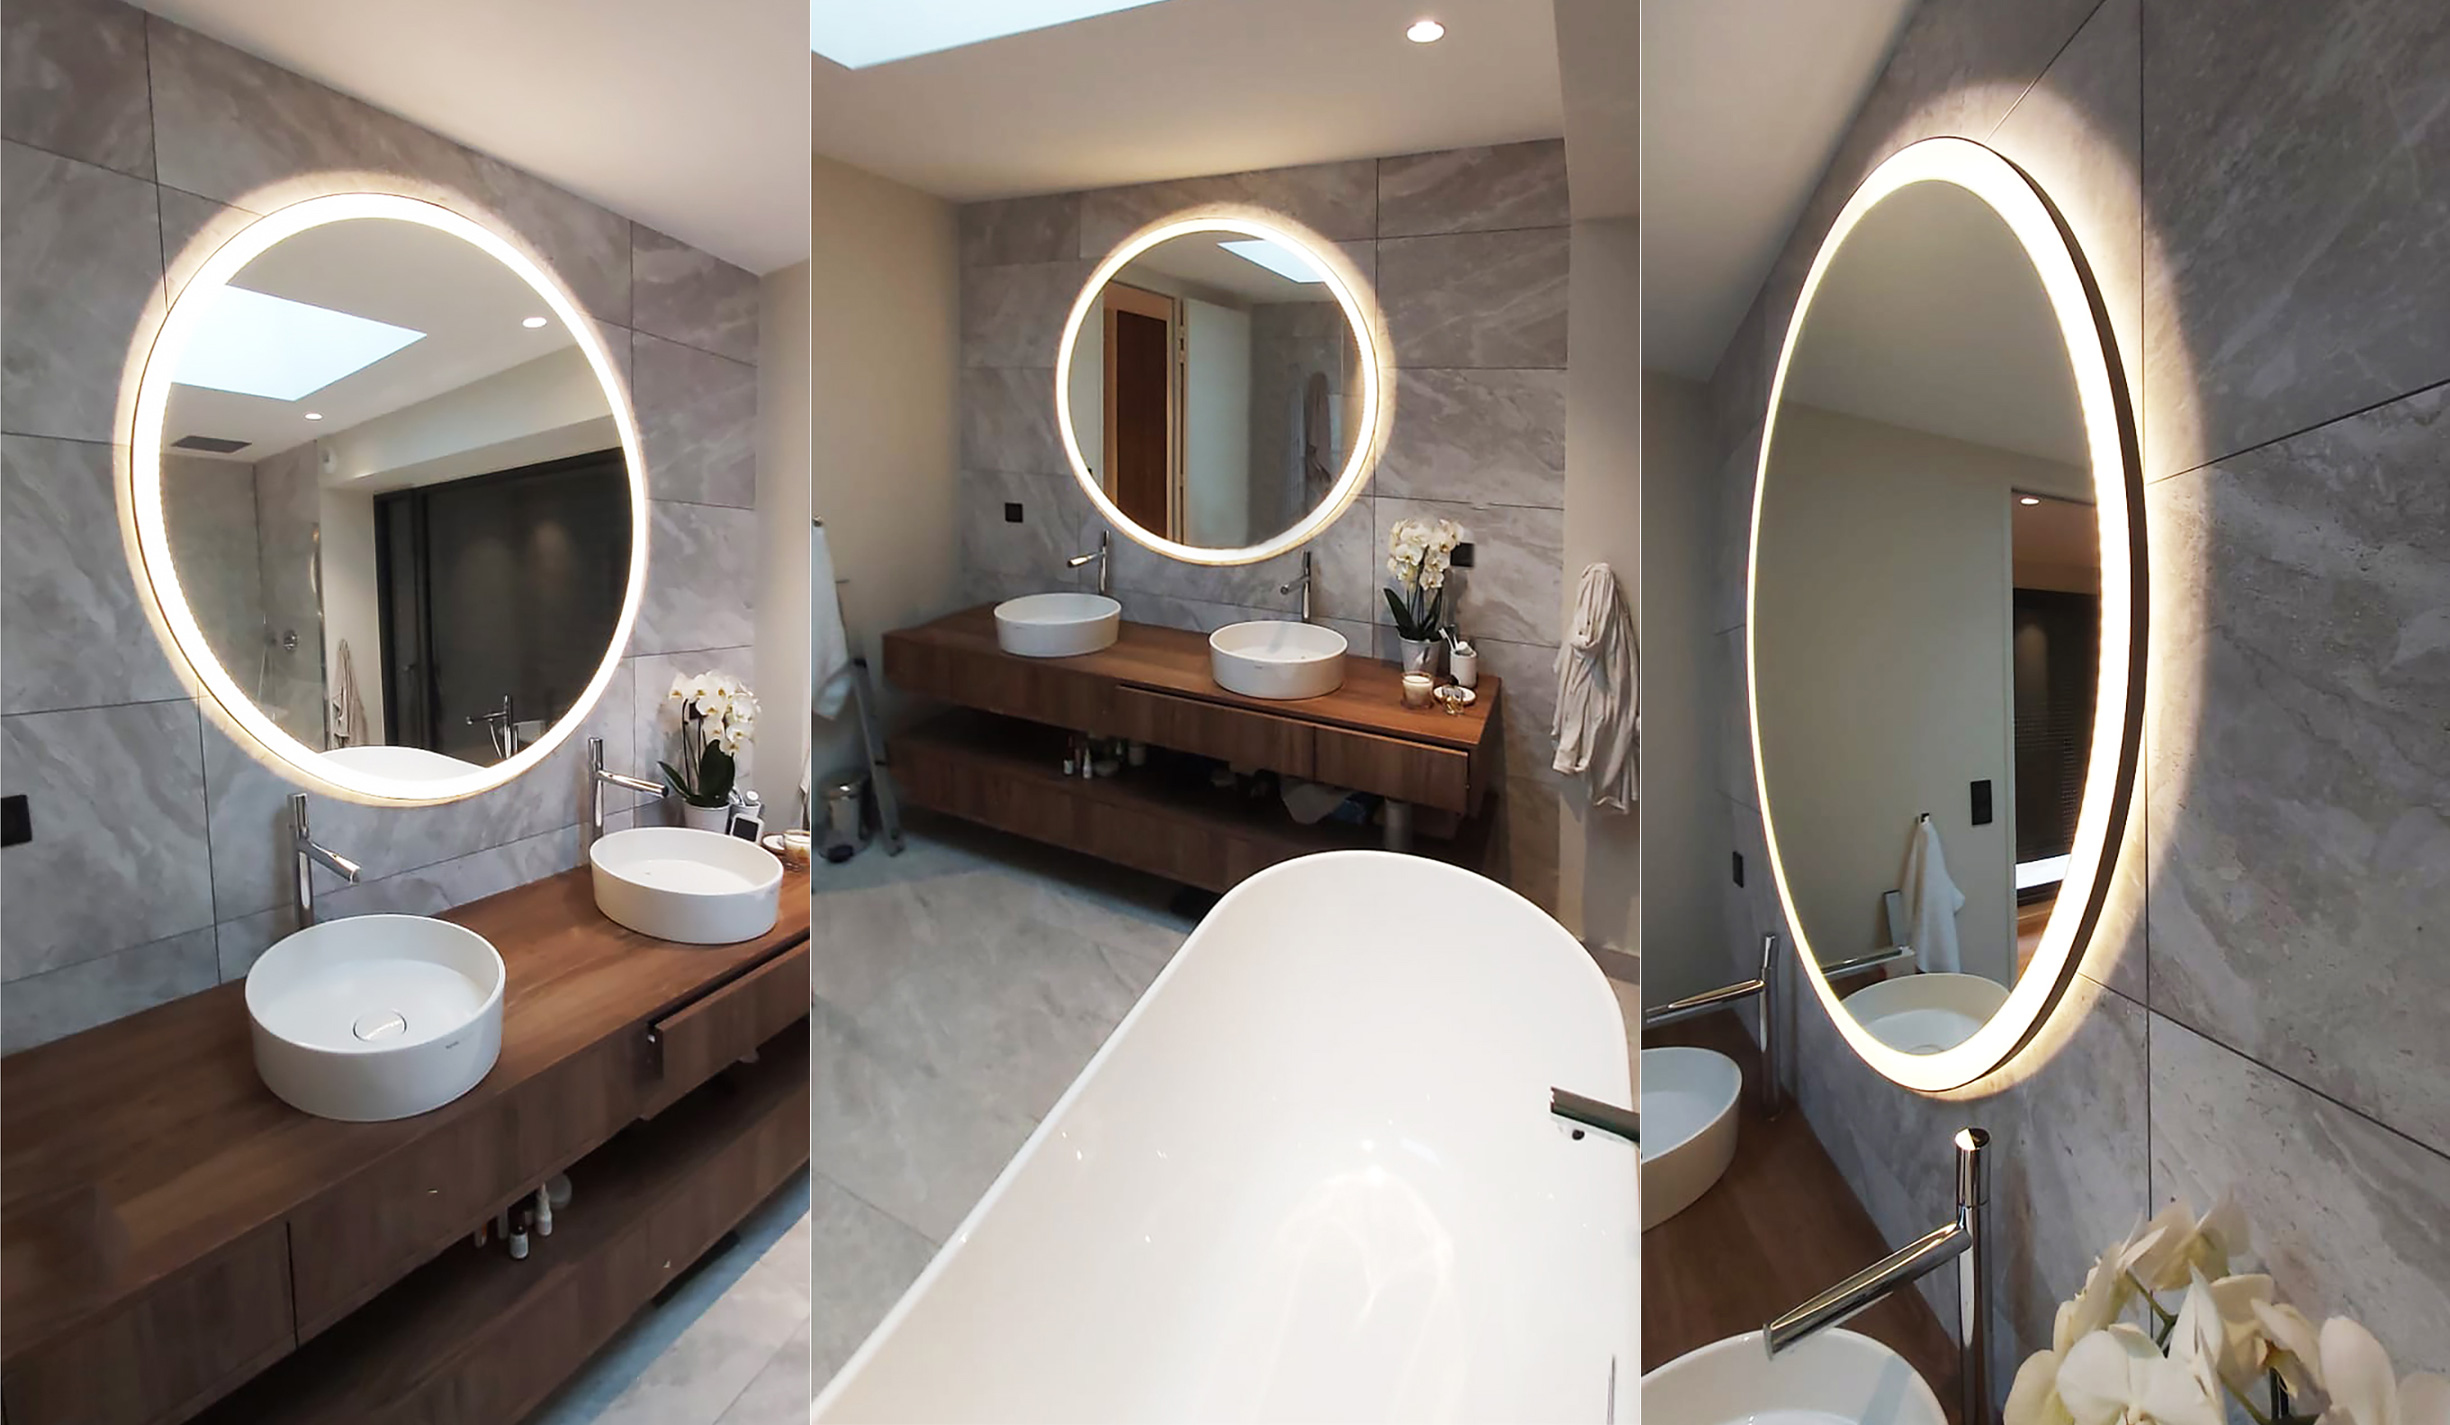 Miroir lumineux pour l'agencement d'une salle de bain dans une villa à Tassin la Demi Lune